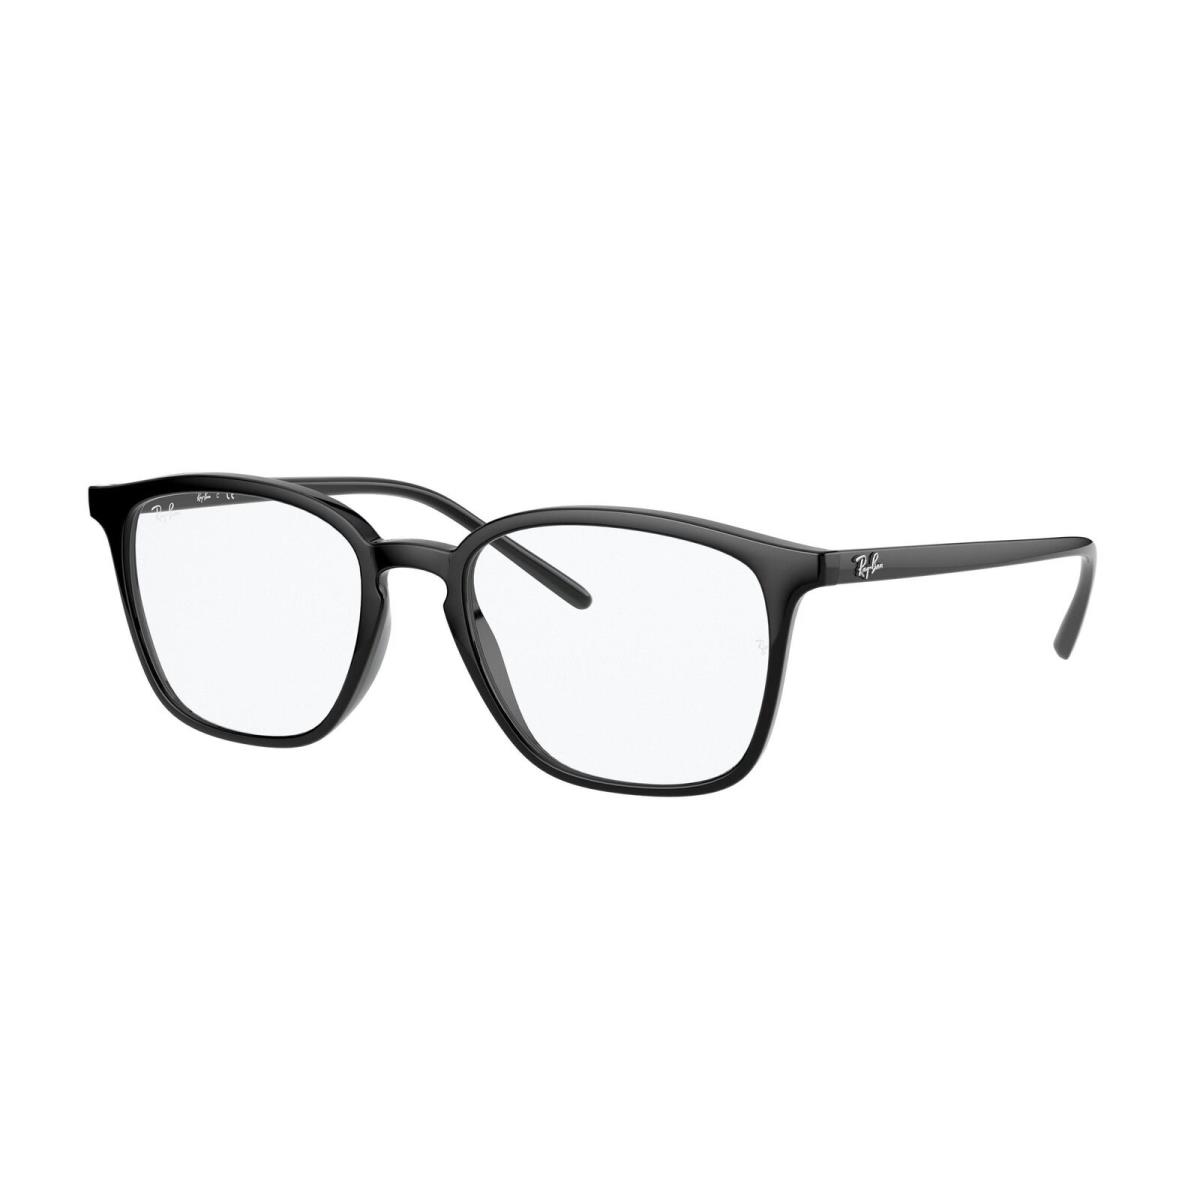 Ray Ban 7185F 2000 Black Eyeglasses 54-18-145